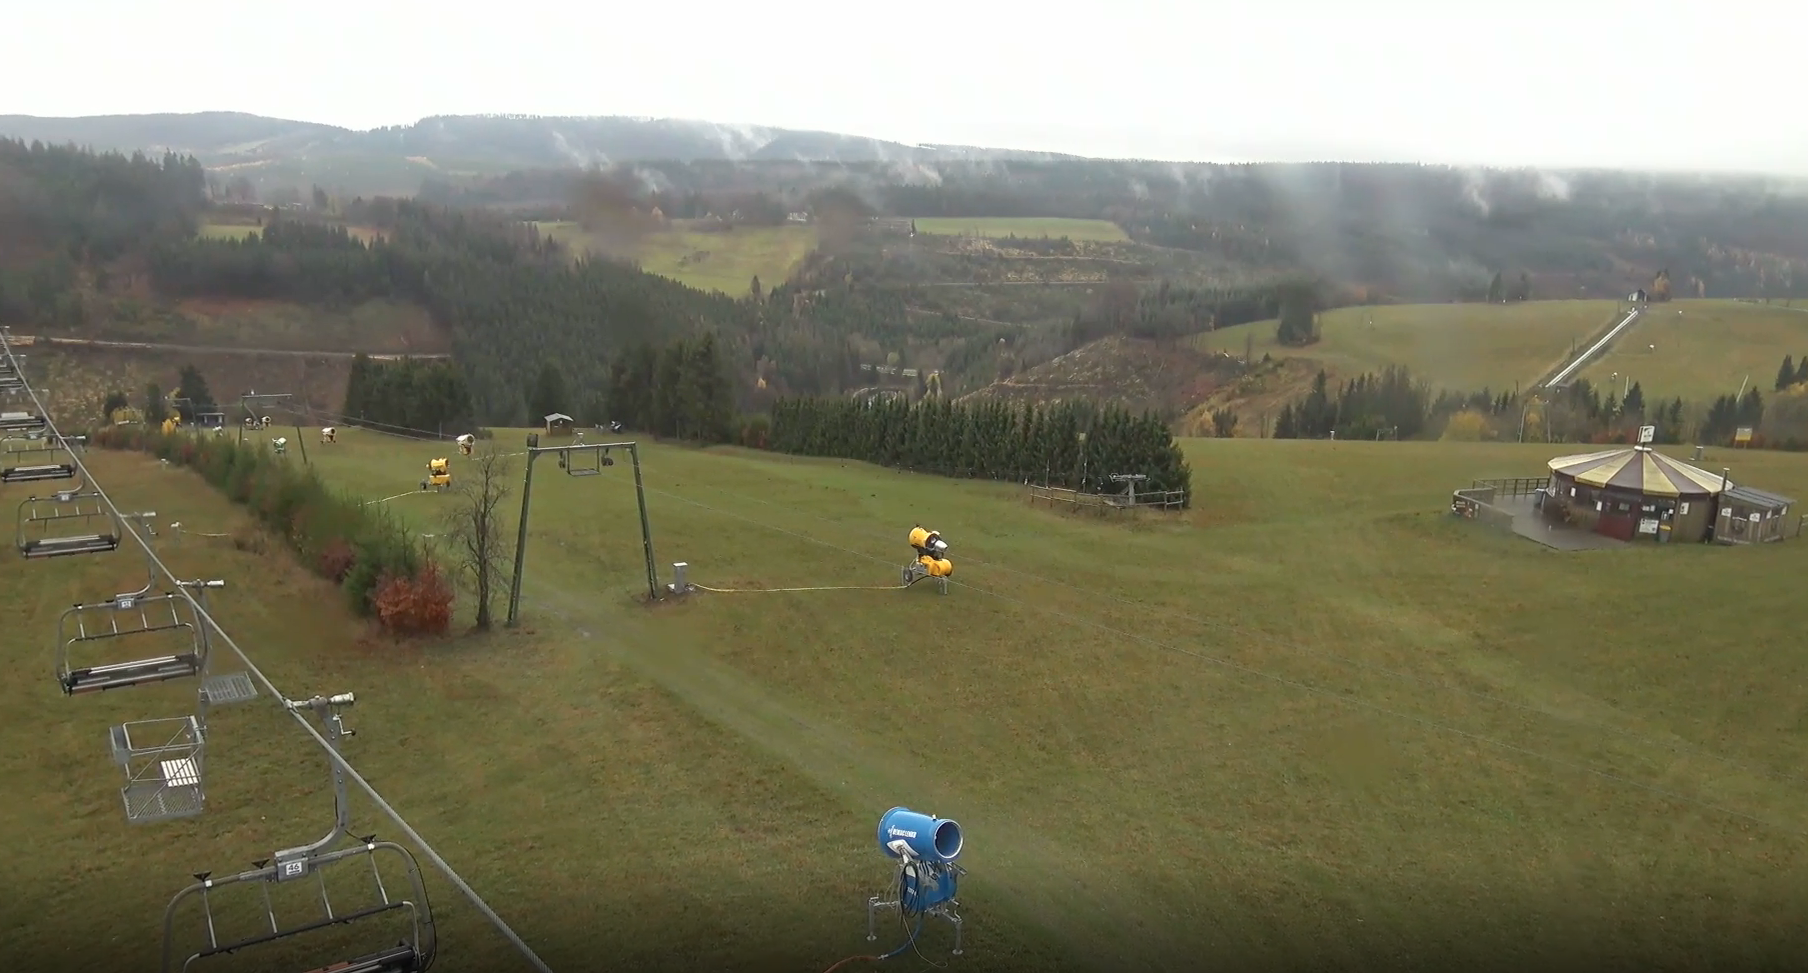 Op 17 november 2022 waren de pistes nog groen in Winterberg, maar de sneeuwkanonnen staan klaar. Beeld: Feratel